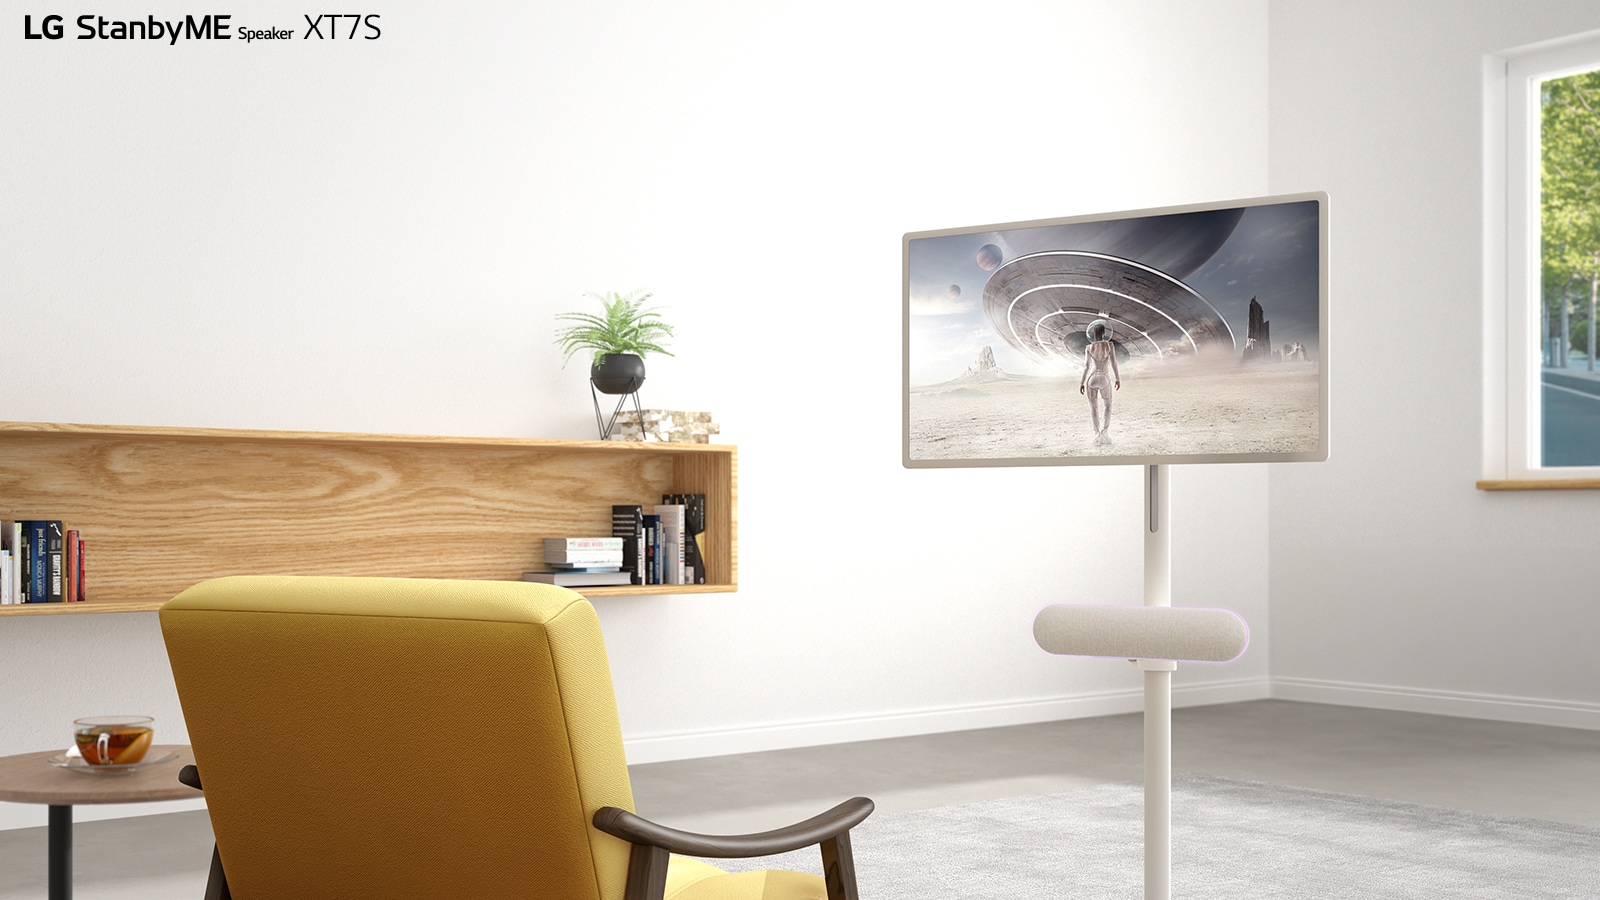 LG StanbyME 放置在客廳中。LG StanbyME Speaker XT7S 放置在螢幕下方。螢幕上播放著一部科幻電影。